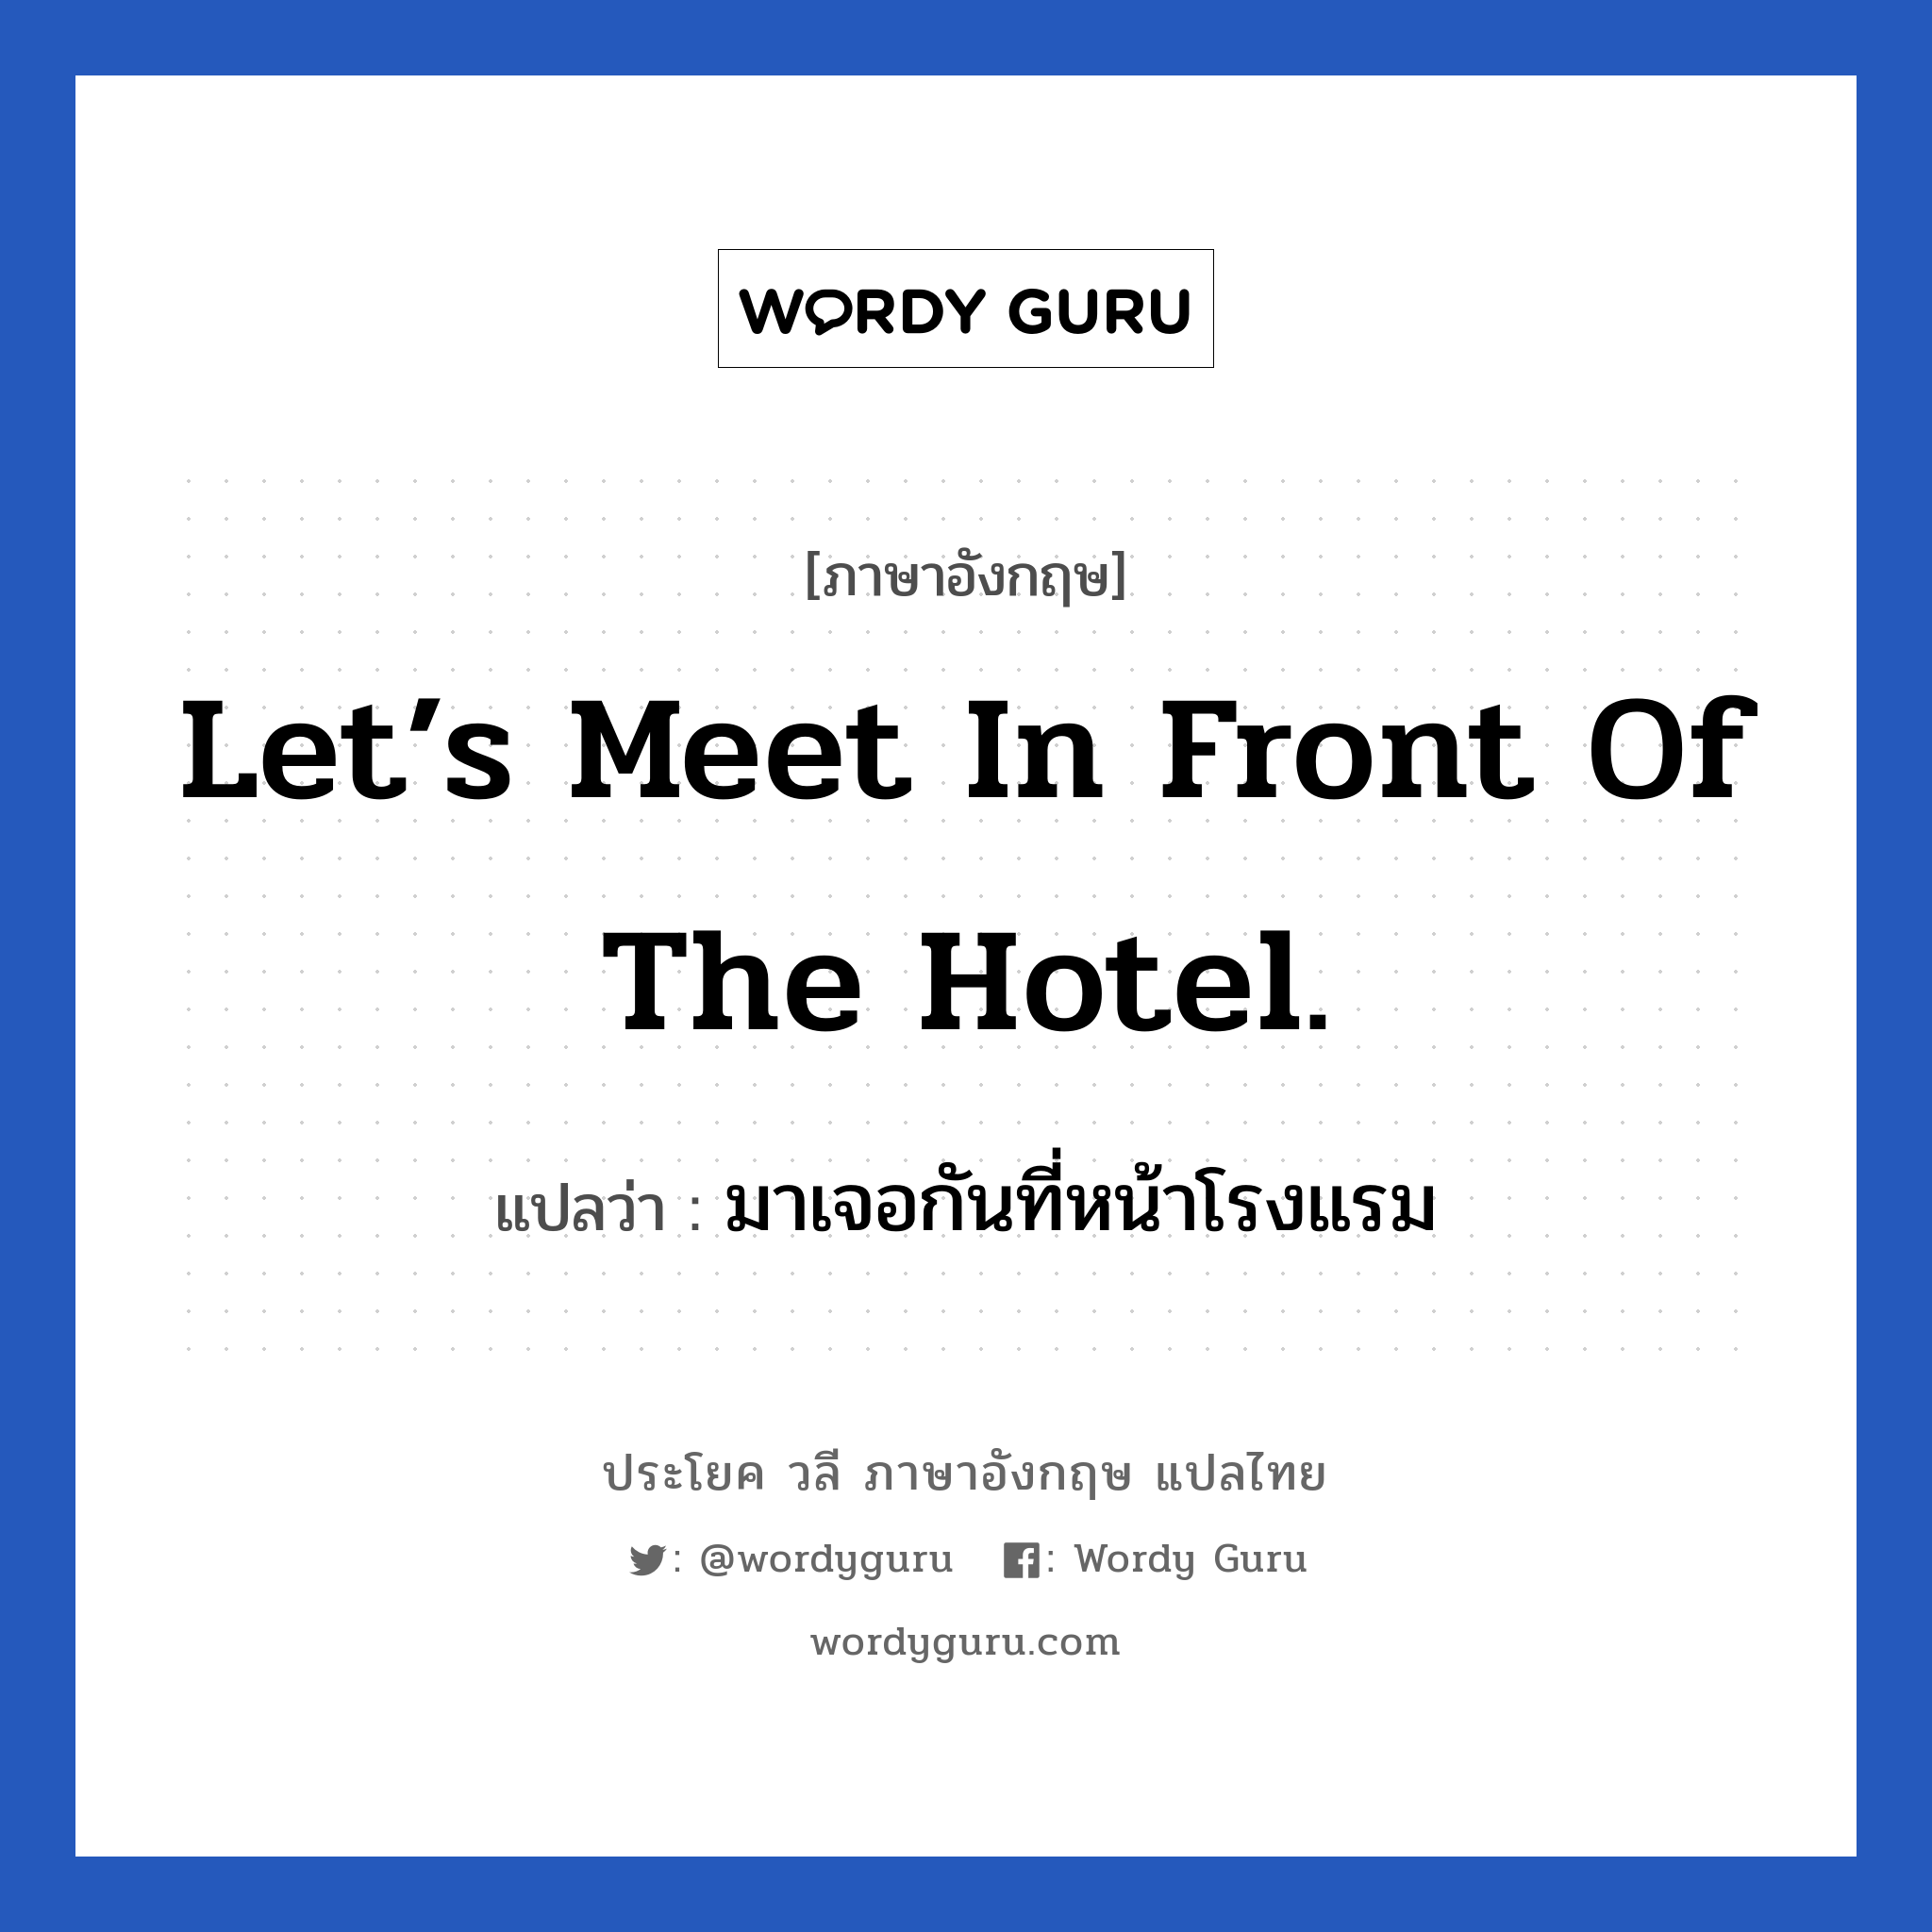 มาเจอกันที่หน้าโรงแรม ภาษาอังกฤษ?, วลีภาษาอังกฤษ มาเจอกันที่หน้าโรงแรม แปลว่า Let’s meet in front of the hotel.